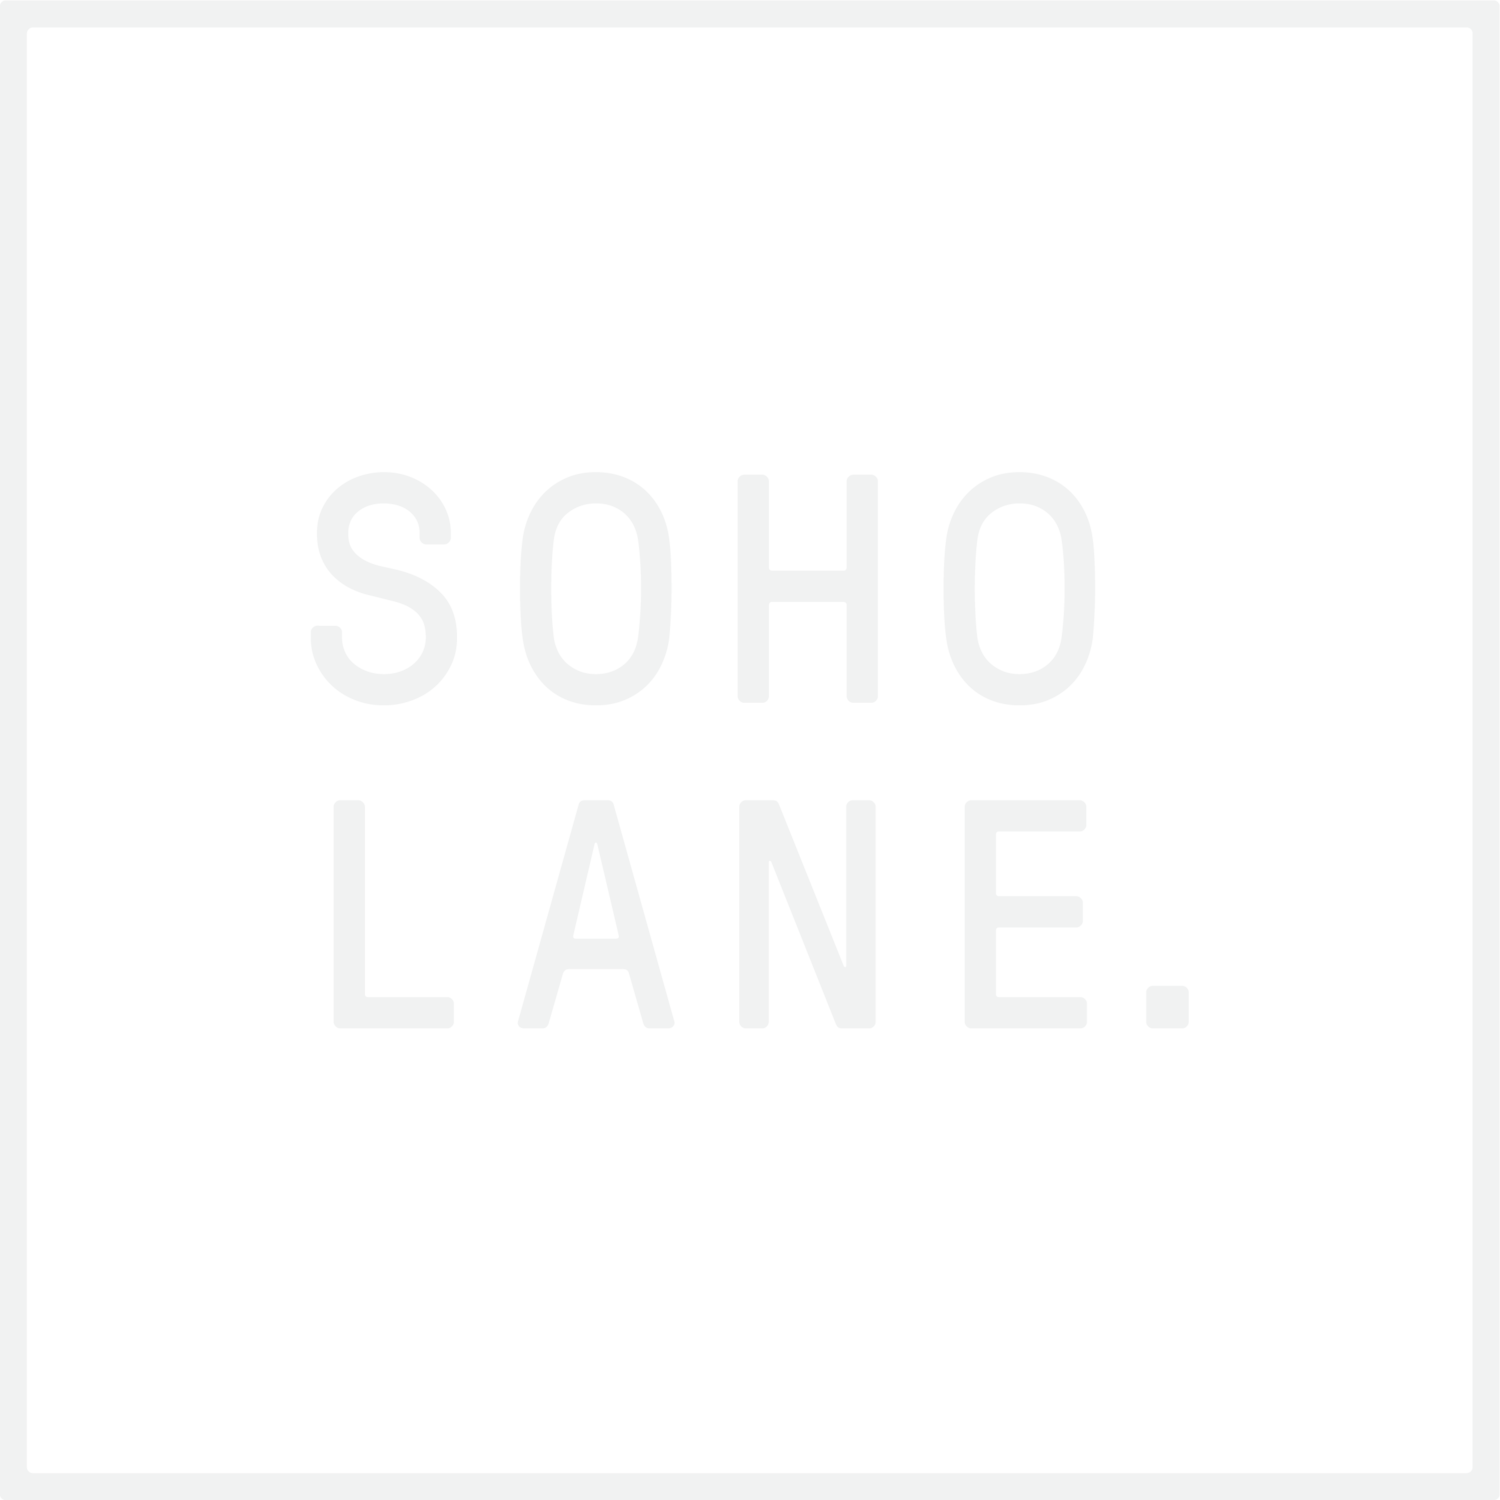 Soho Lane